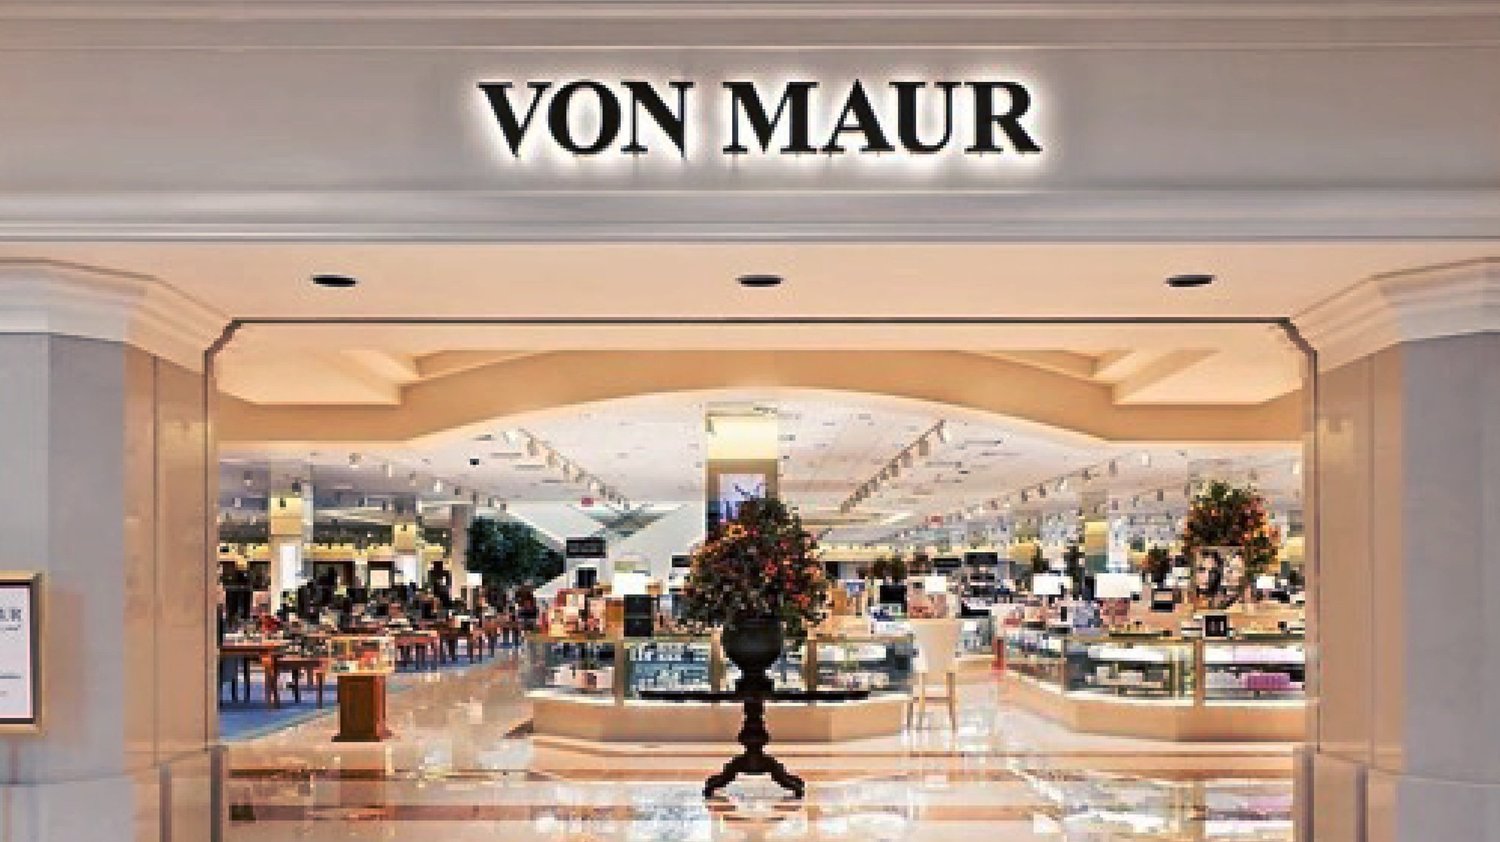 Welcome To The Adit Retail Network: Von Maur